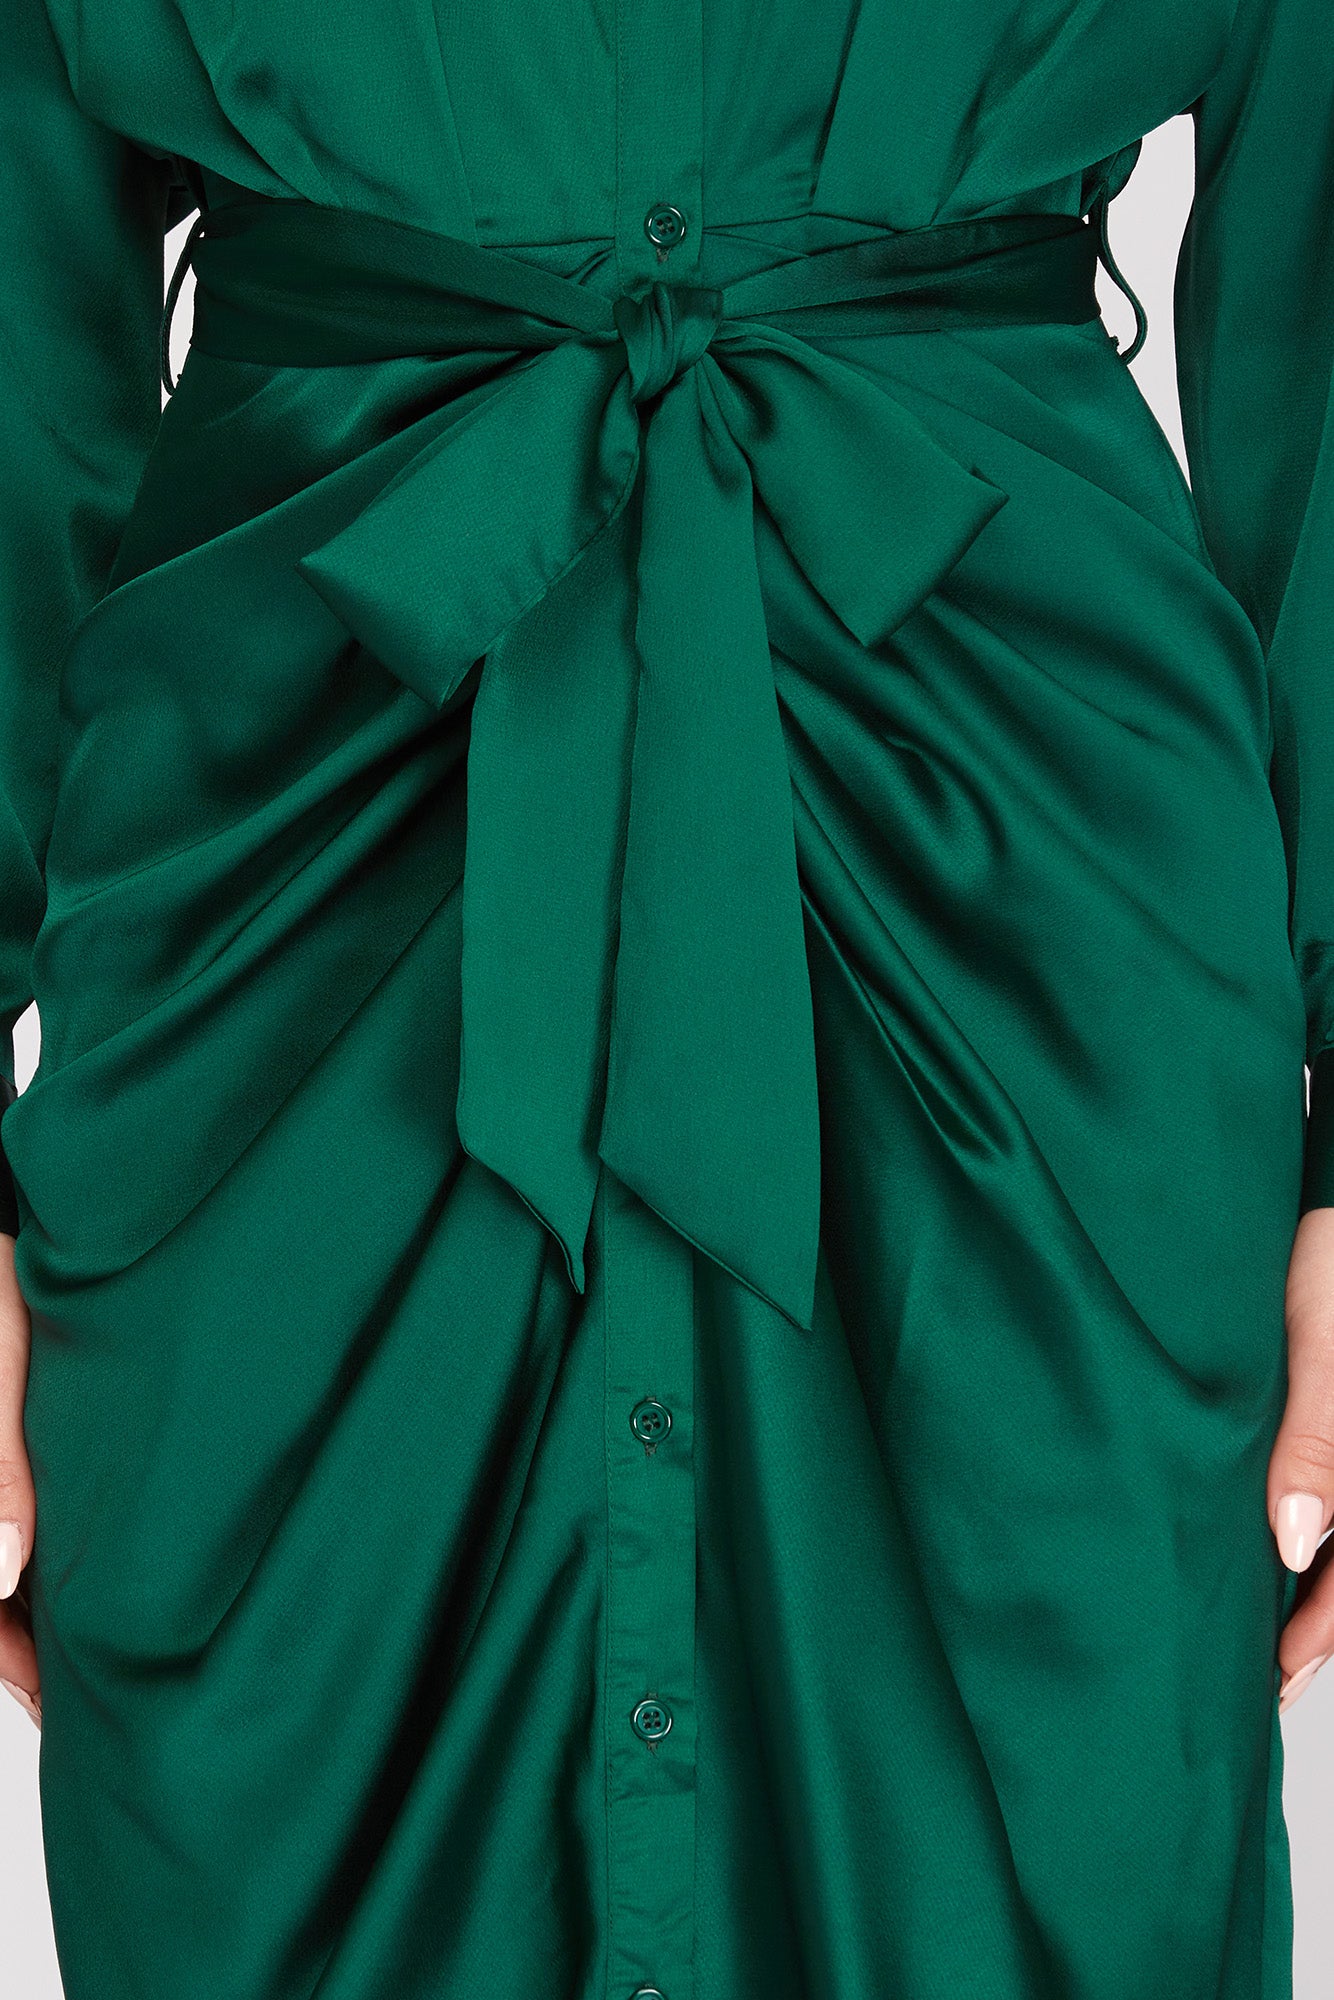 Green Satin Long Sleeve Front Button Dress